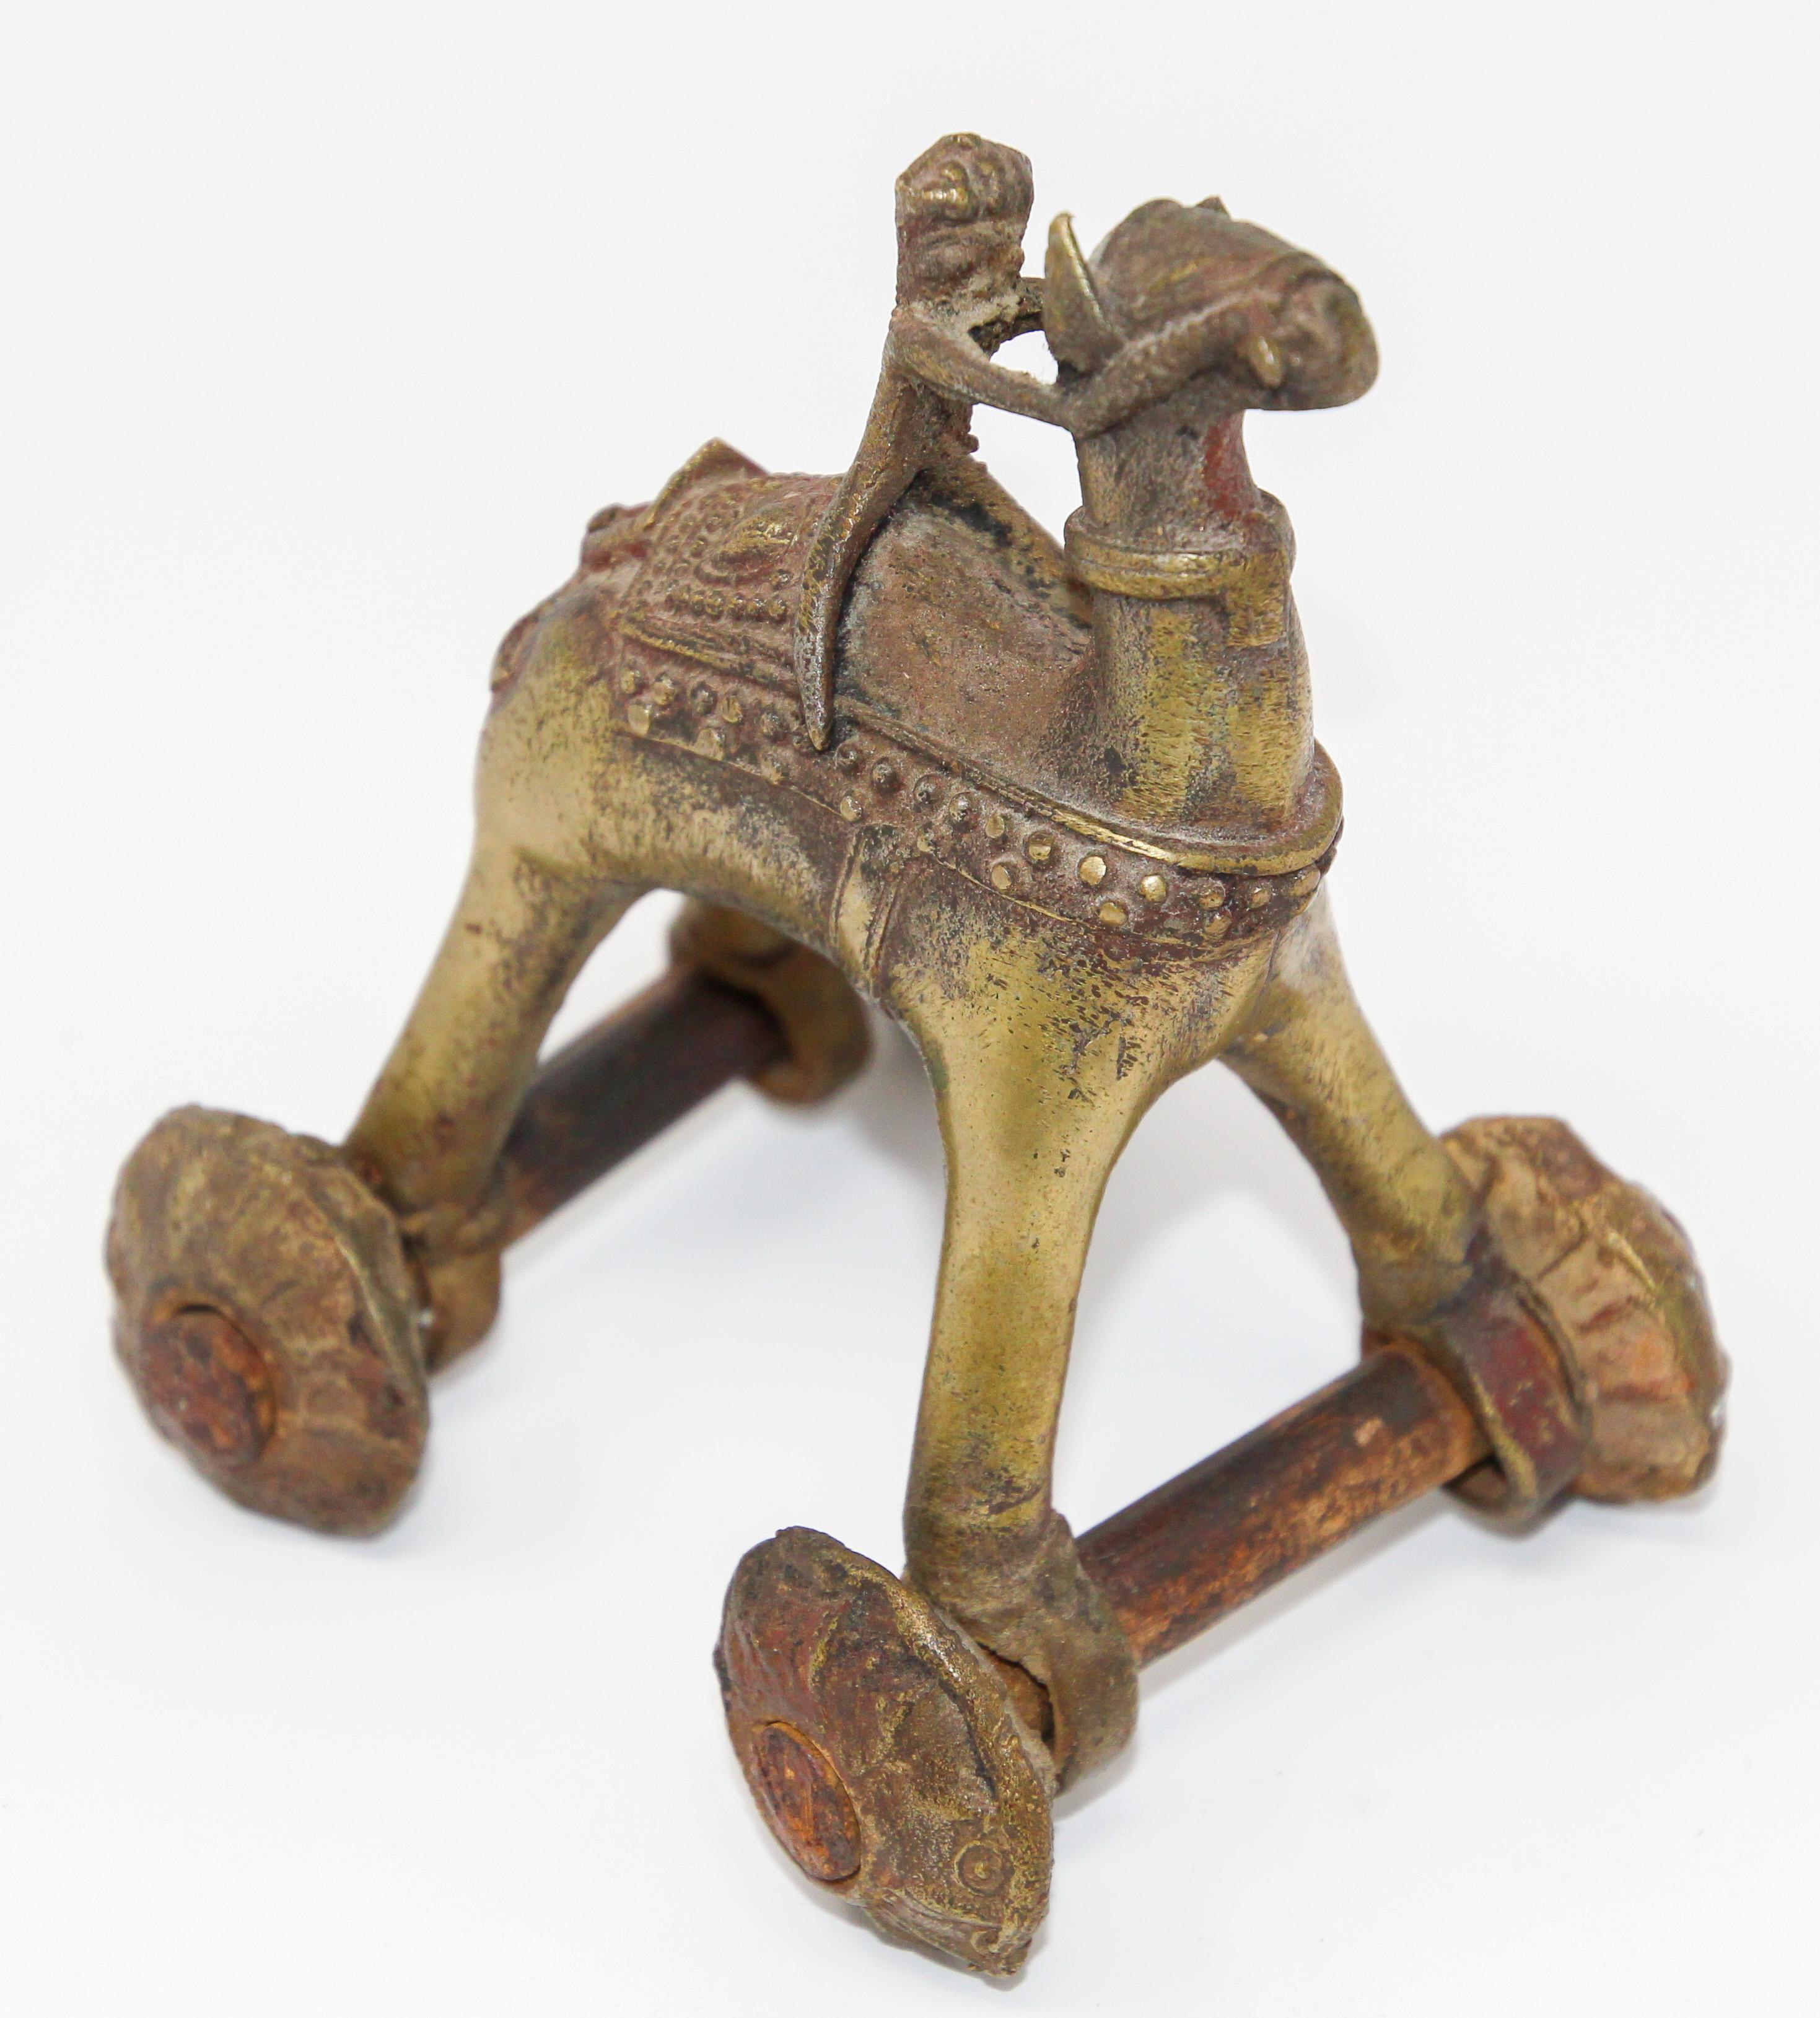 Inspiriert von einer Szene aus dem Ramakian oder Ramayan, dem indischen Epos von Rama und Sita.
Antike indische Tempel Spielzeug Bronze Kamel auf Rädern.
Antike Hindu-Bronze-Tempel Kamel mit Reiter Statue Spielzeug auf Rädern.
Diese gegossenen